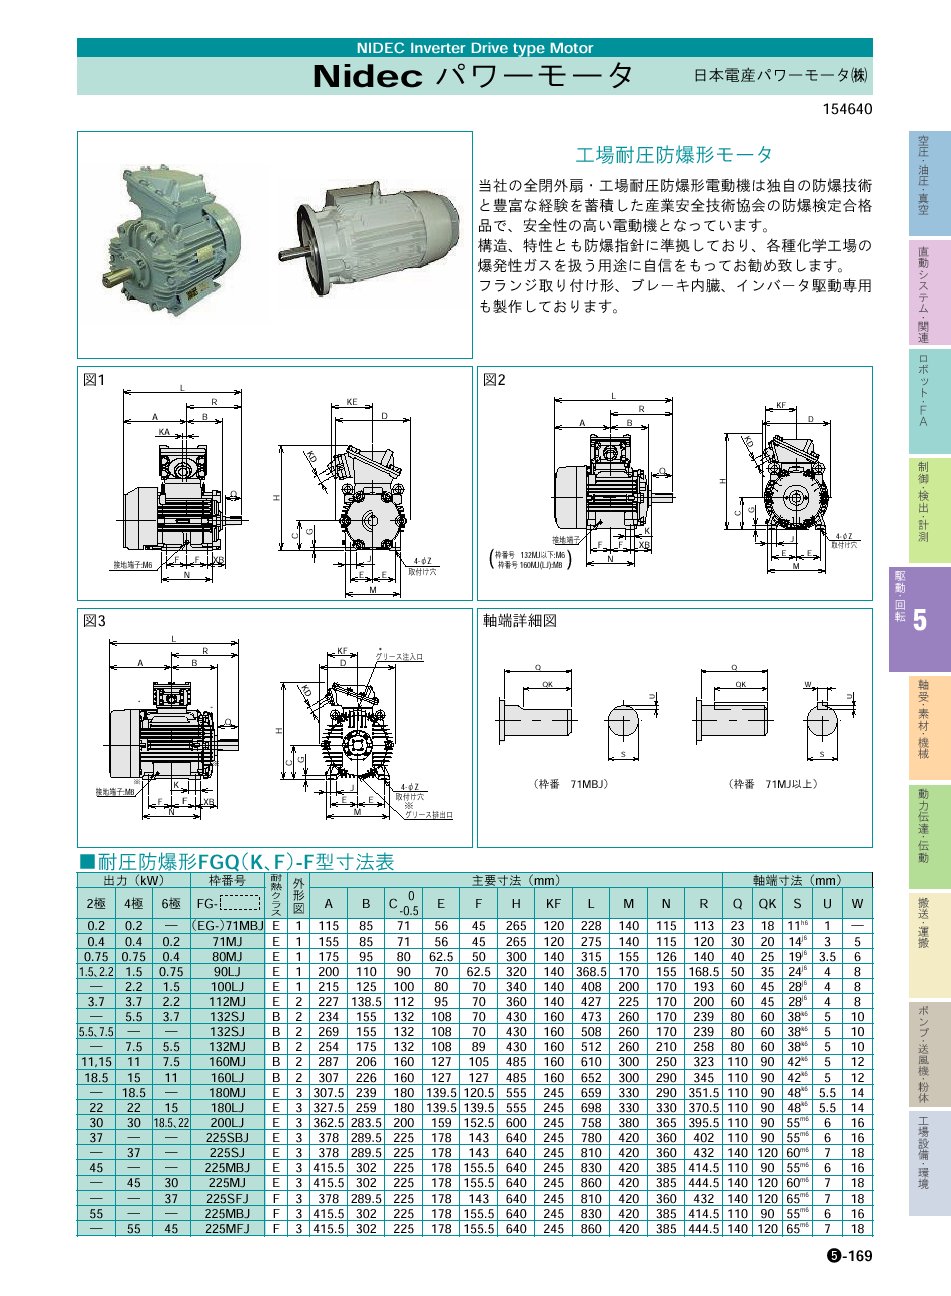 日本電産パワーモータ(株) パワーモータ 工場耐圧防爆形モータ P05-169 駆動・回転制御機器 価格